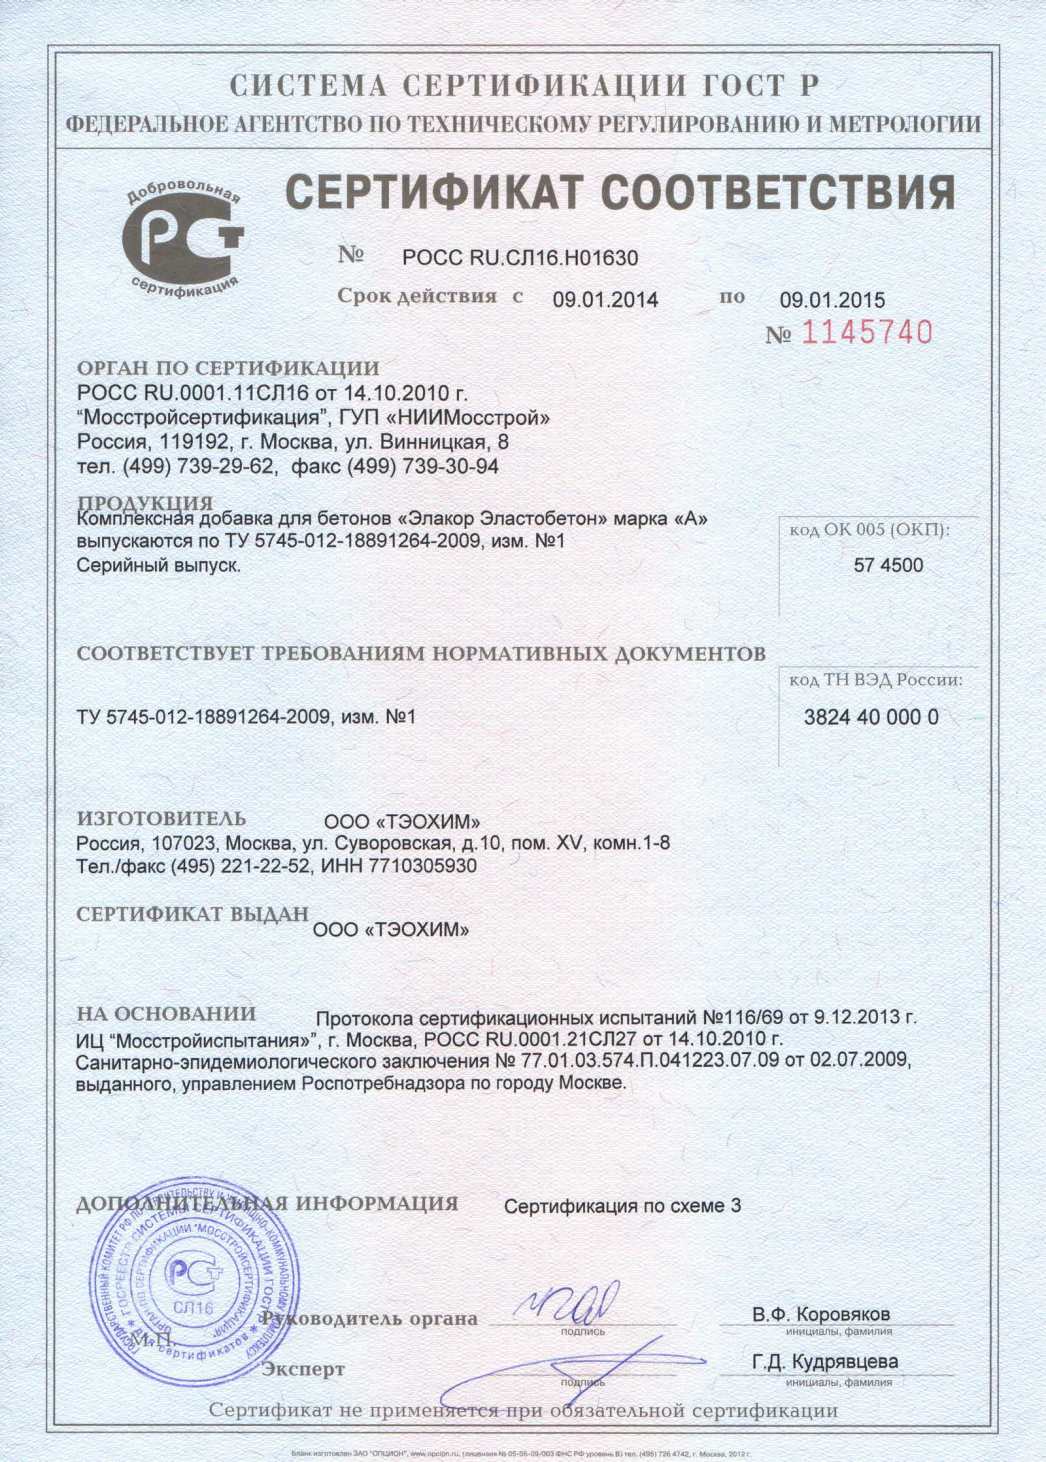 Добавка для бетона Эластобетон-А - сертификат соответствия ГУП «НИИМосстрой»